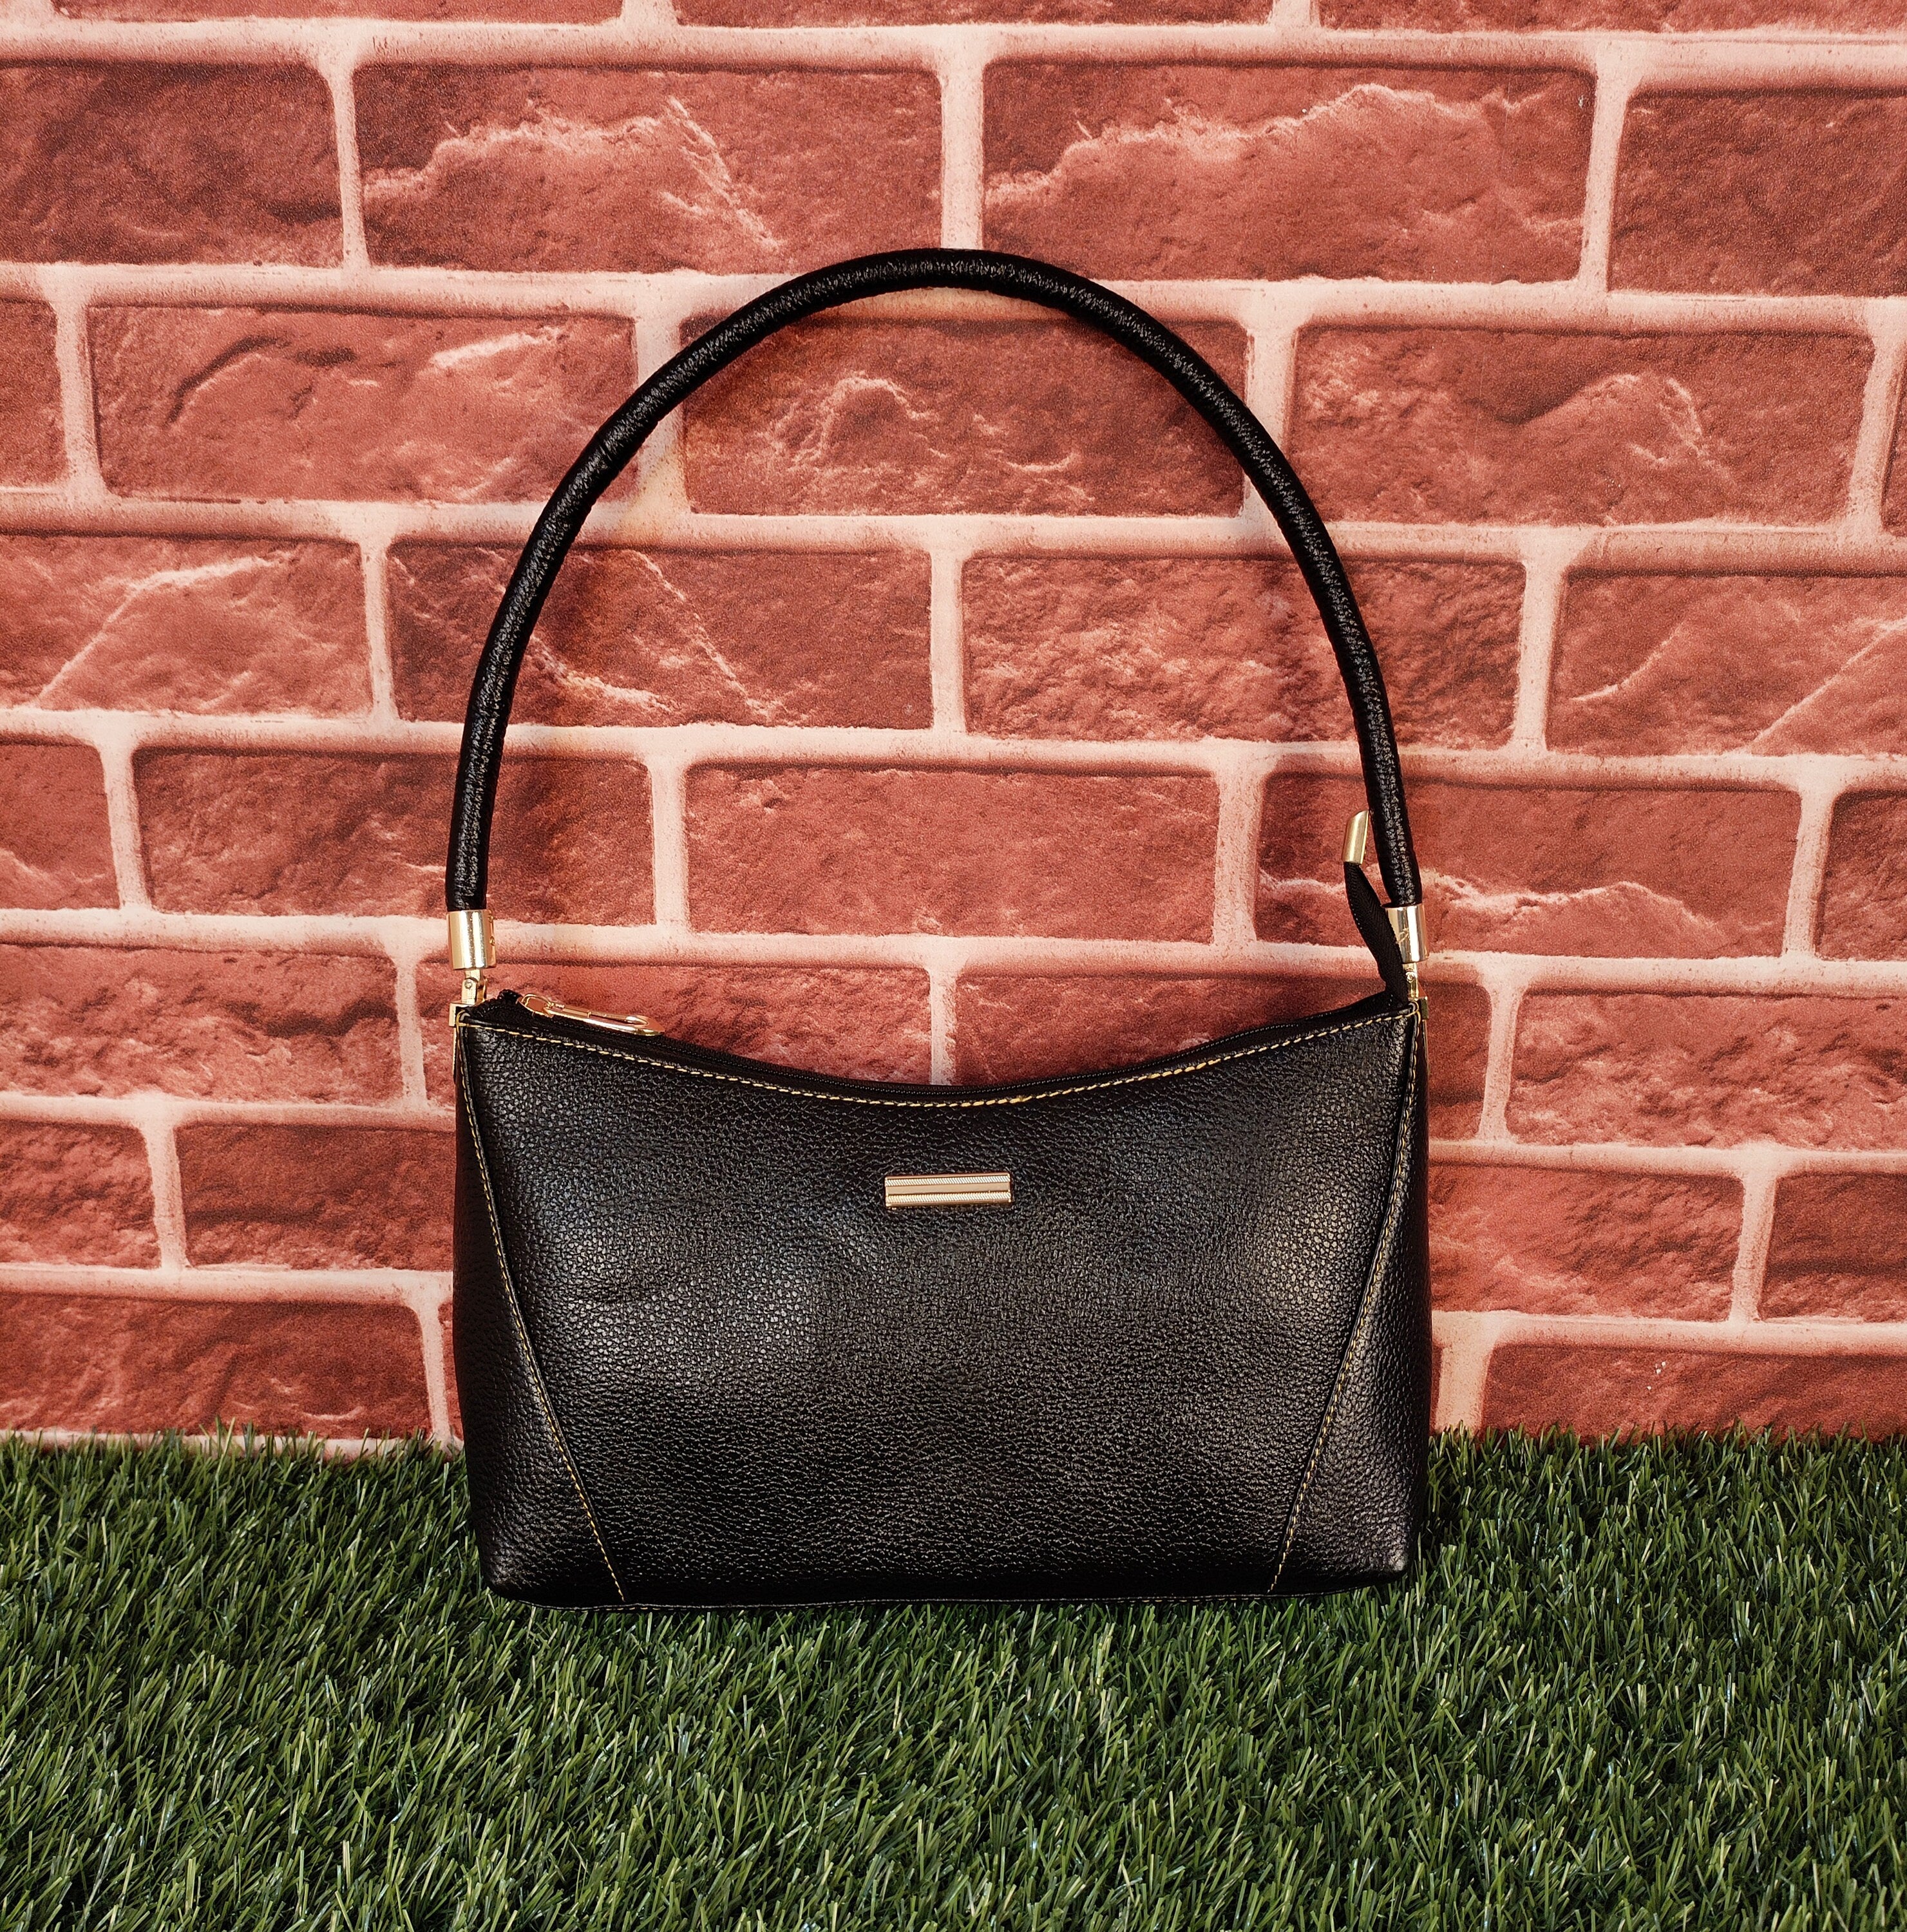 LEATHER HOBO Bag BLACK Oversize Shoulder Bag Everyday Leather Purse Soft  Leather Handbag for Women - Etsy | Soft leather handbags, Leather hobo,  Leather handbags